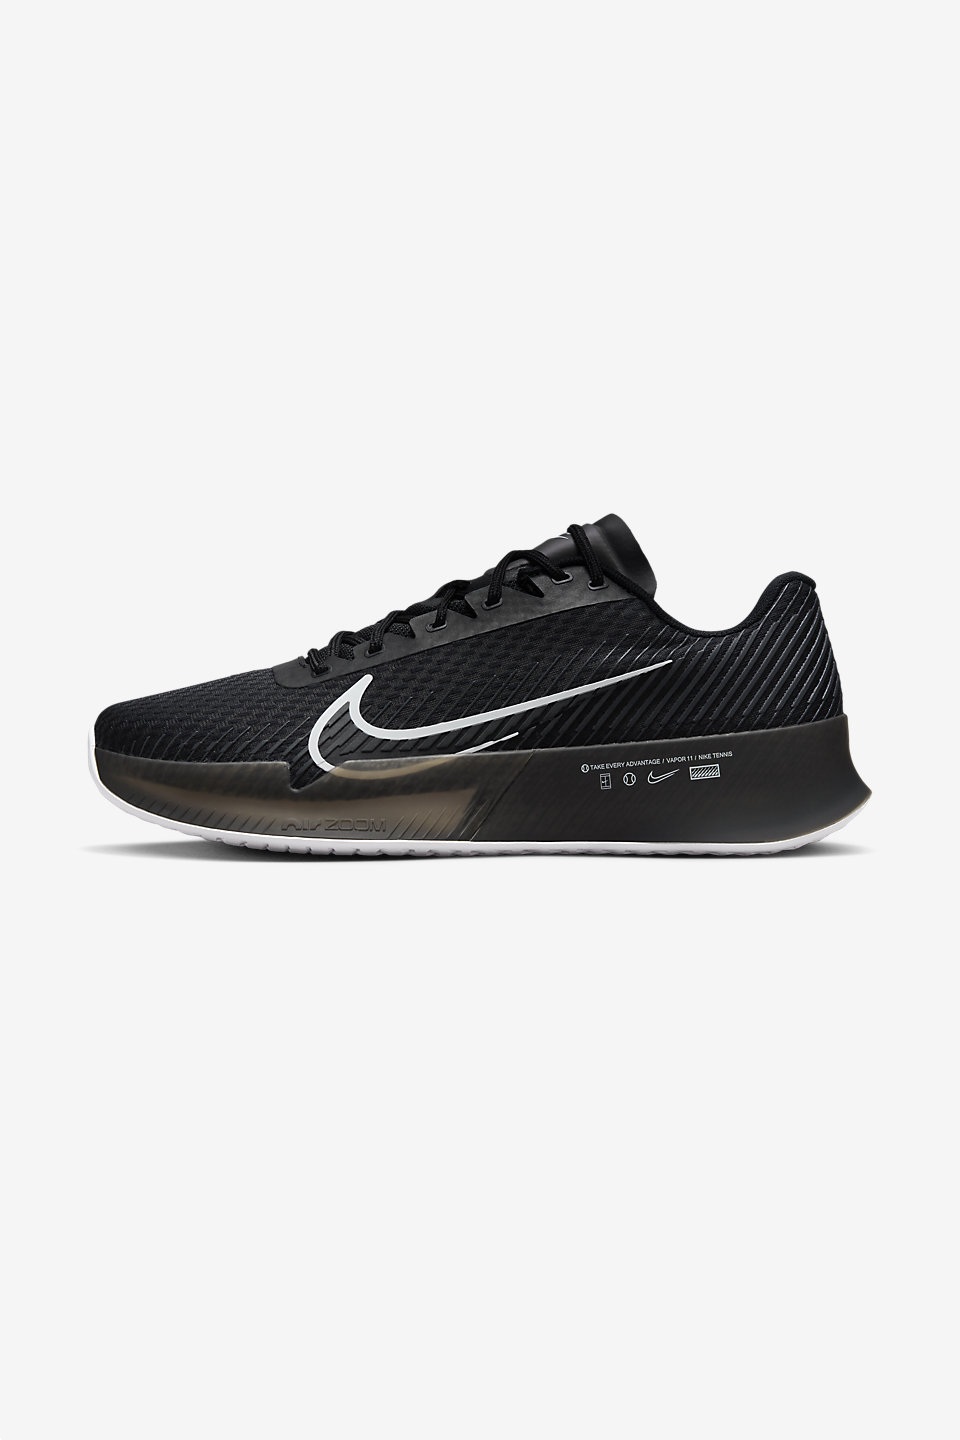 NIKE - NikeCourt Air Zoom Vapor 11 Erkek Tenis Ayakkabısı